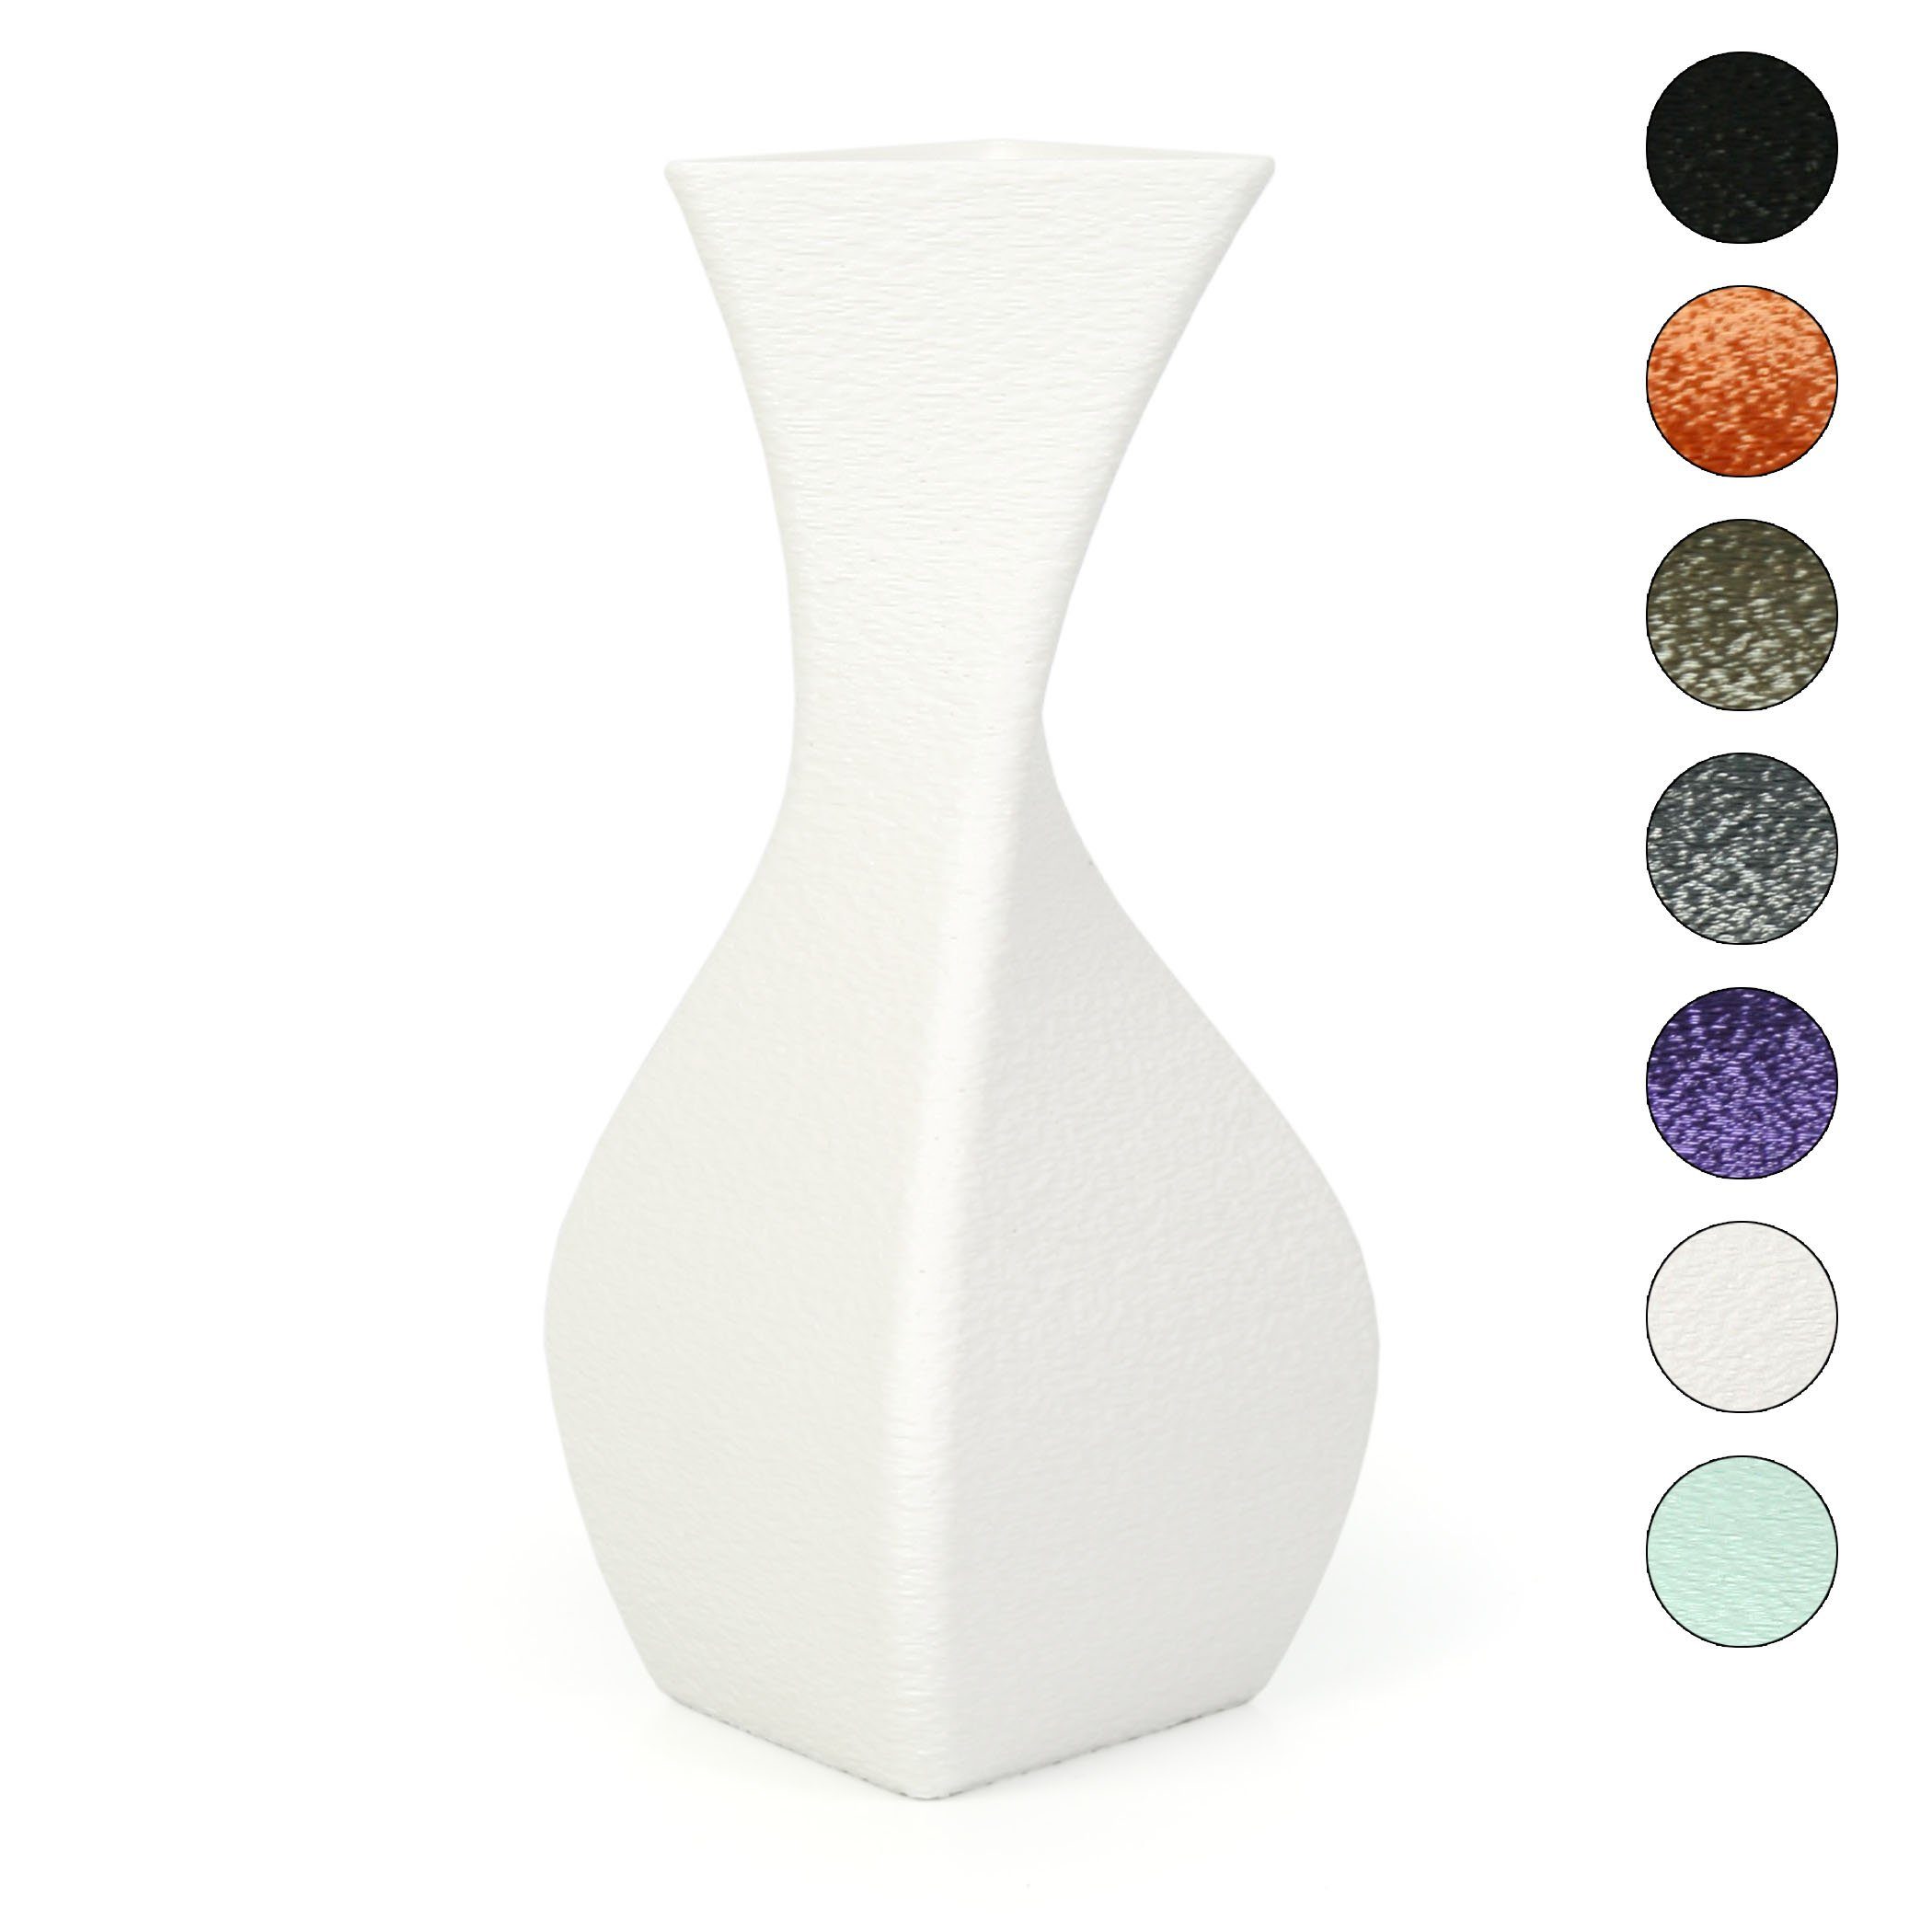 Kreative Feder Dekovase Designer Vase – Dekorative Blumenvase aus Bio-Kunststoff, aus nachwachsenden Rohstoffen; wasserdicht & bruchsicher White